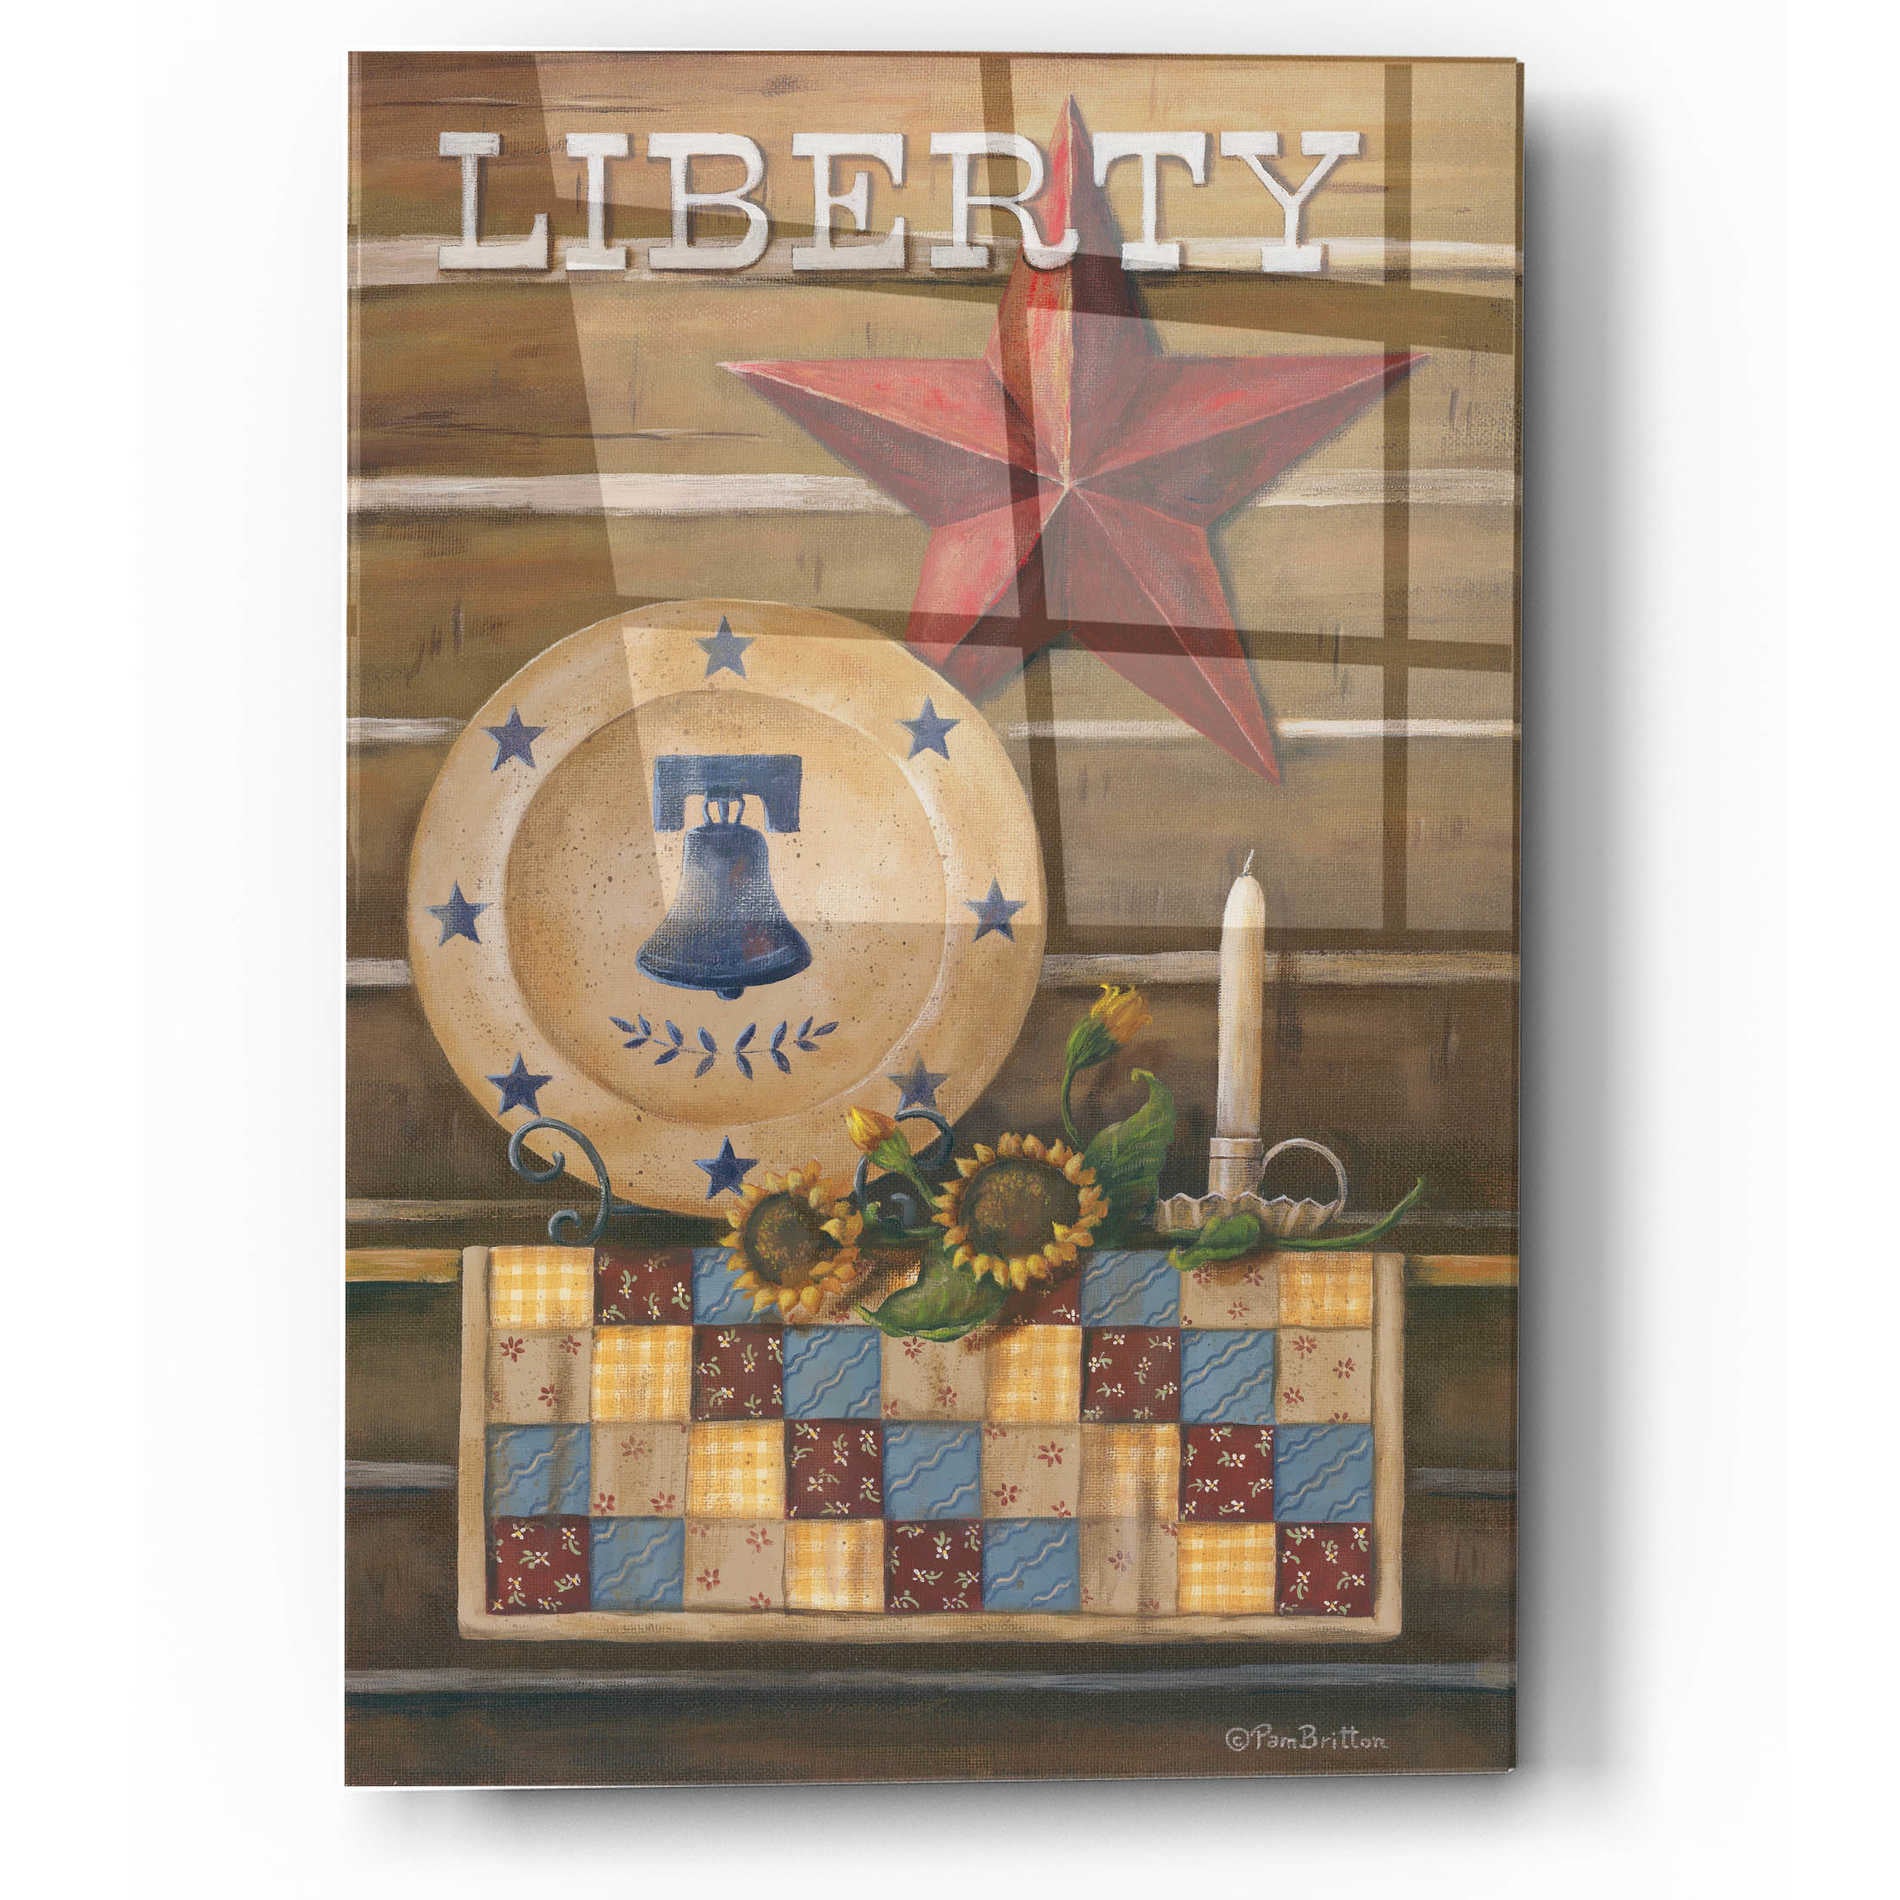 Epic Art 'Liberty' by Pam Britton, Acrylic Glass Wall Art,12x16